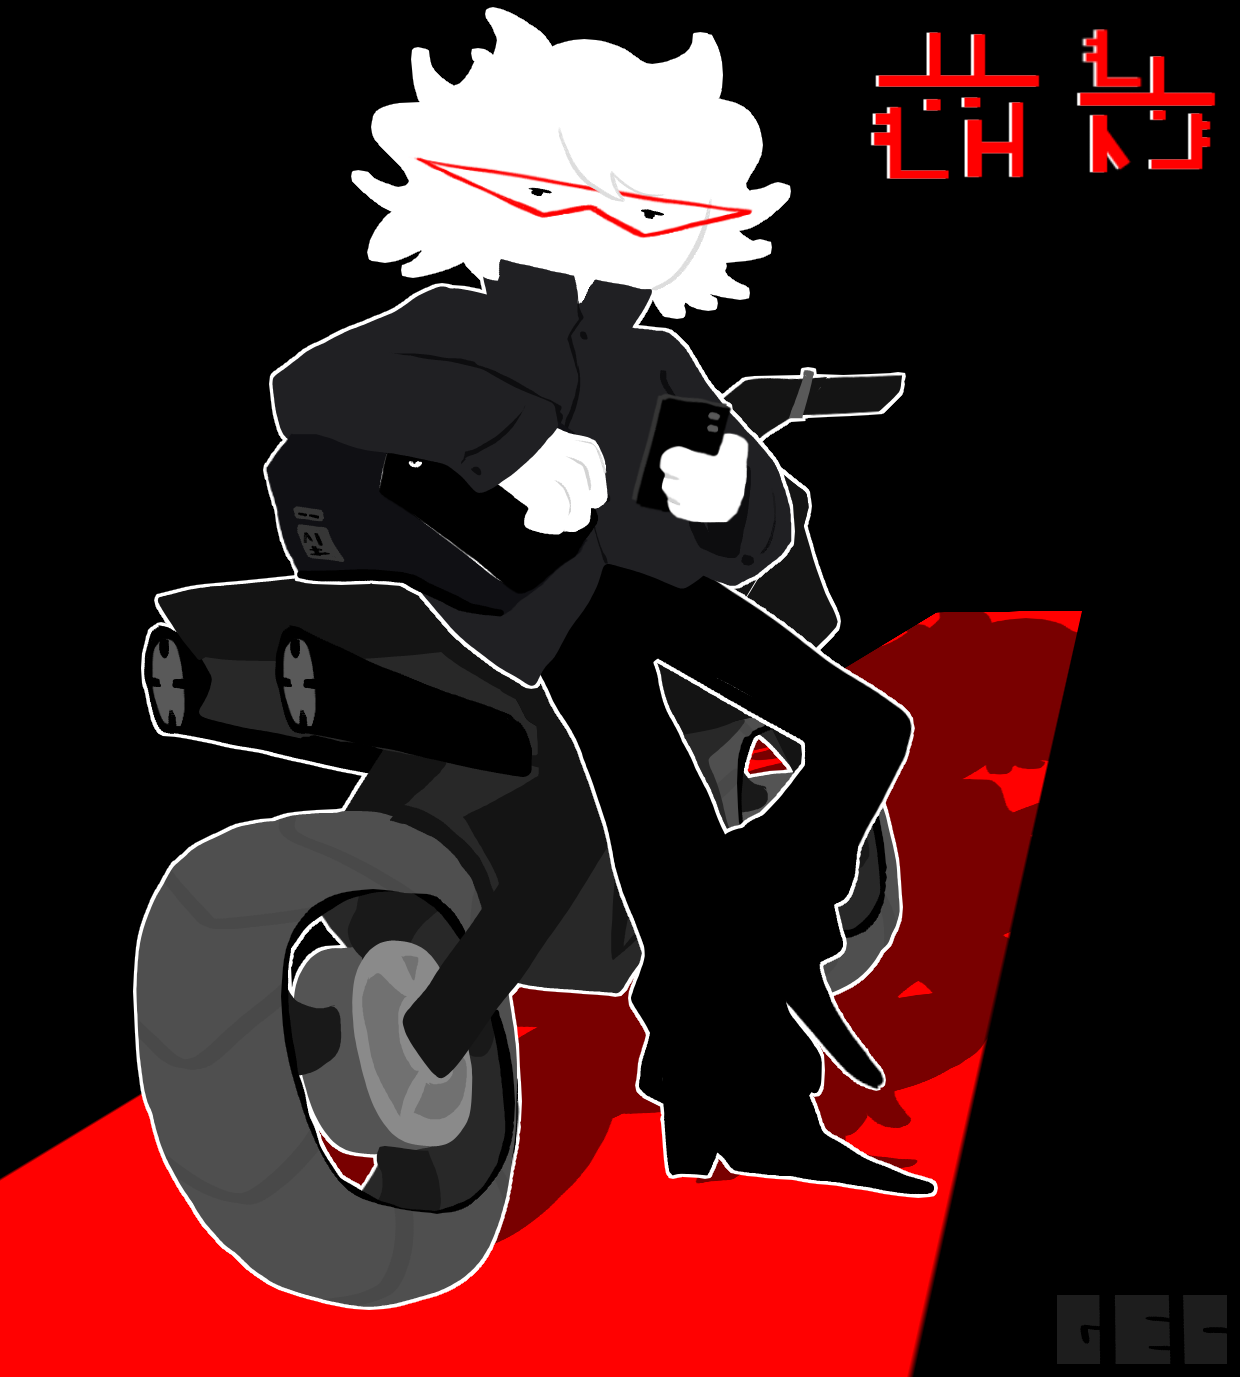 muruntu's motorcycle